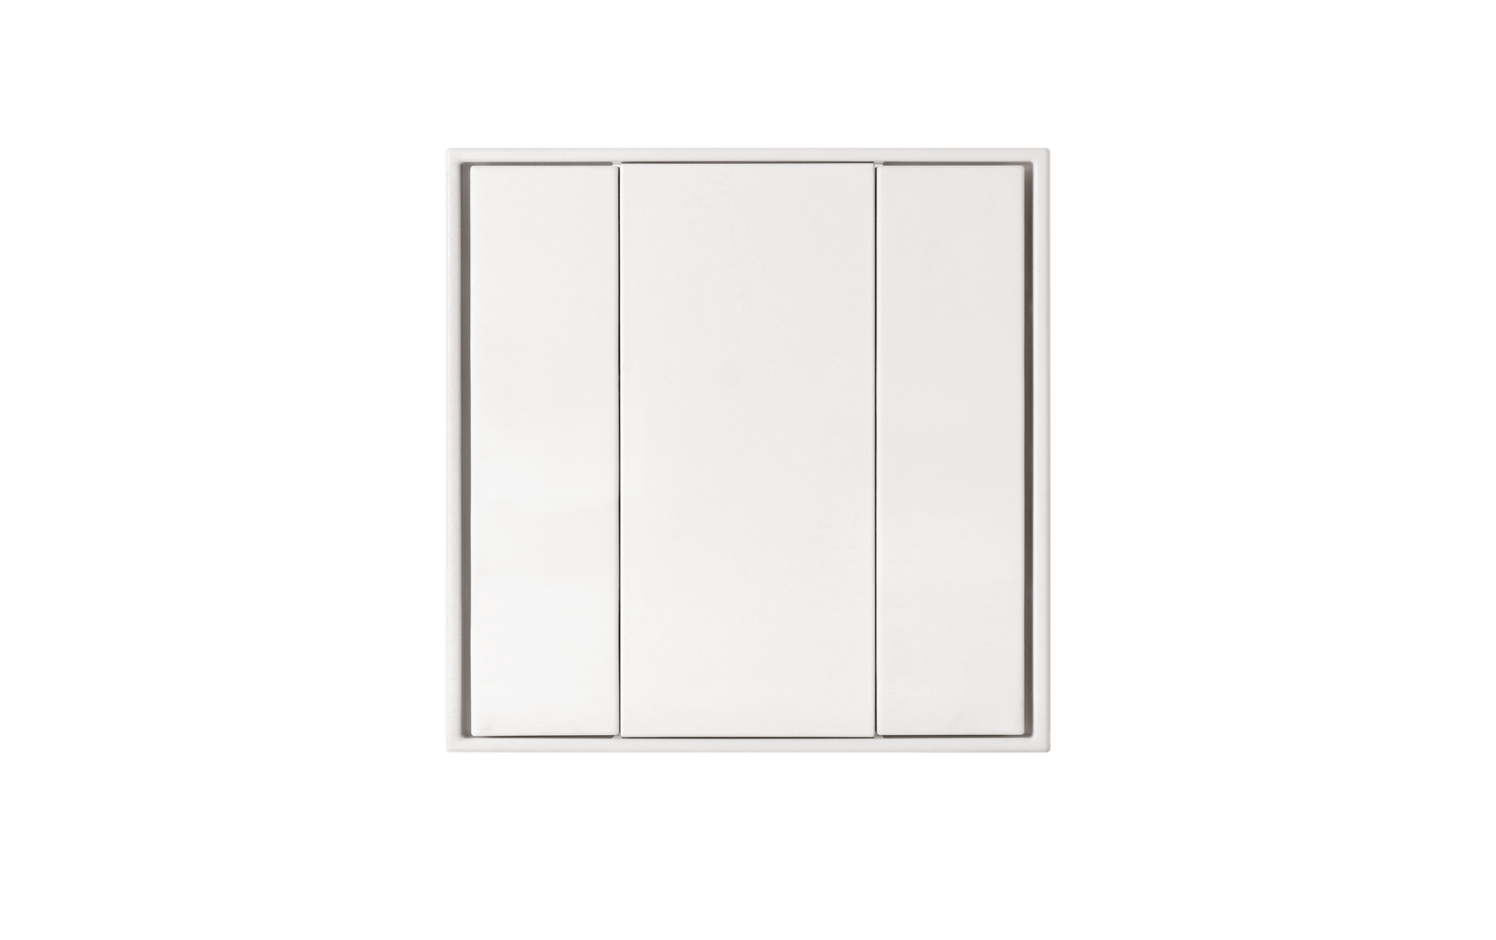 Model B DALI-2 Switch - 2 Button White Plastic